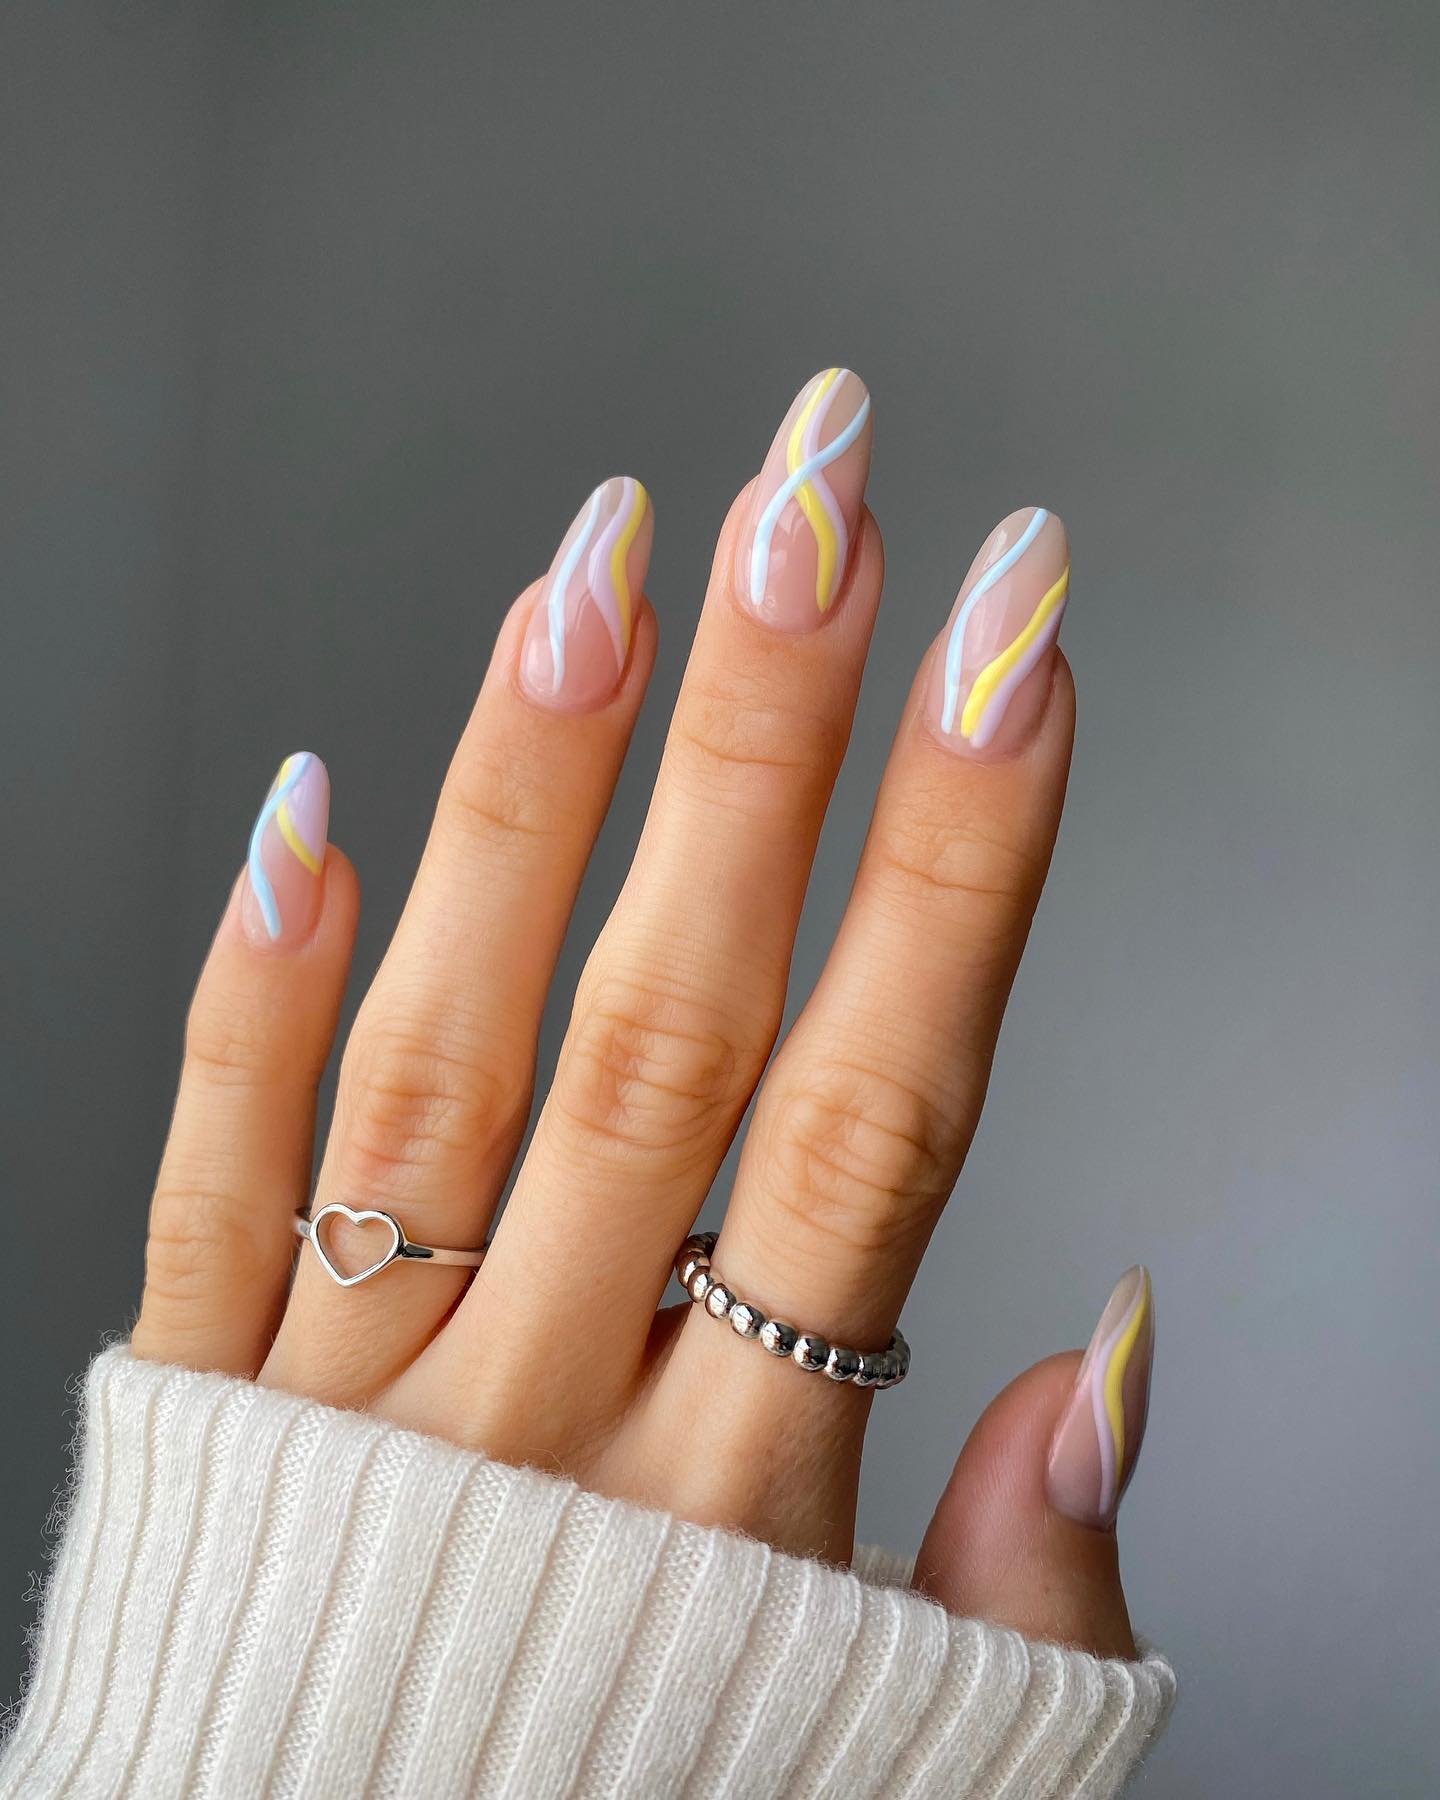 nails art manicura de colores